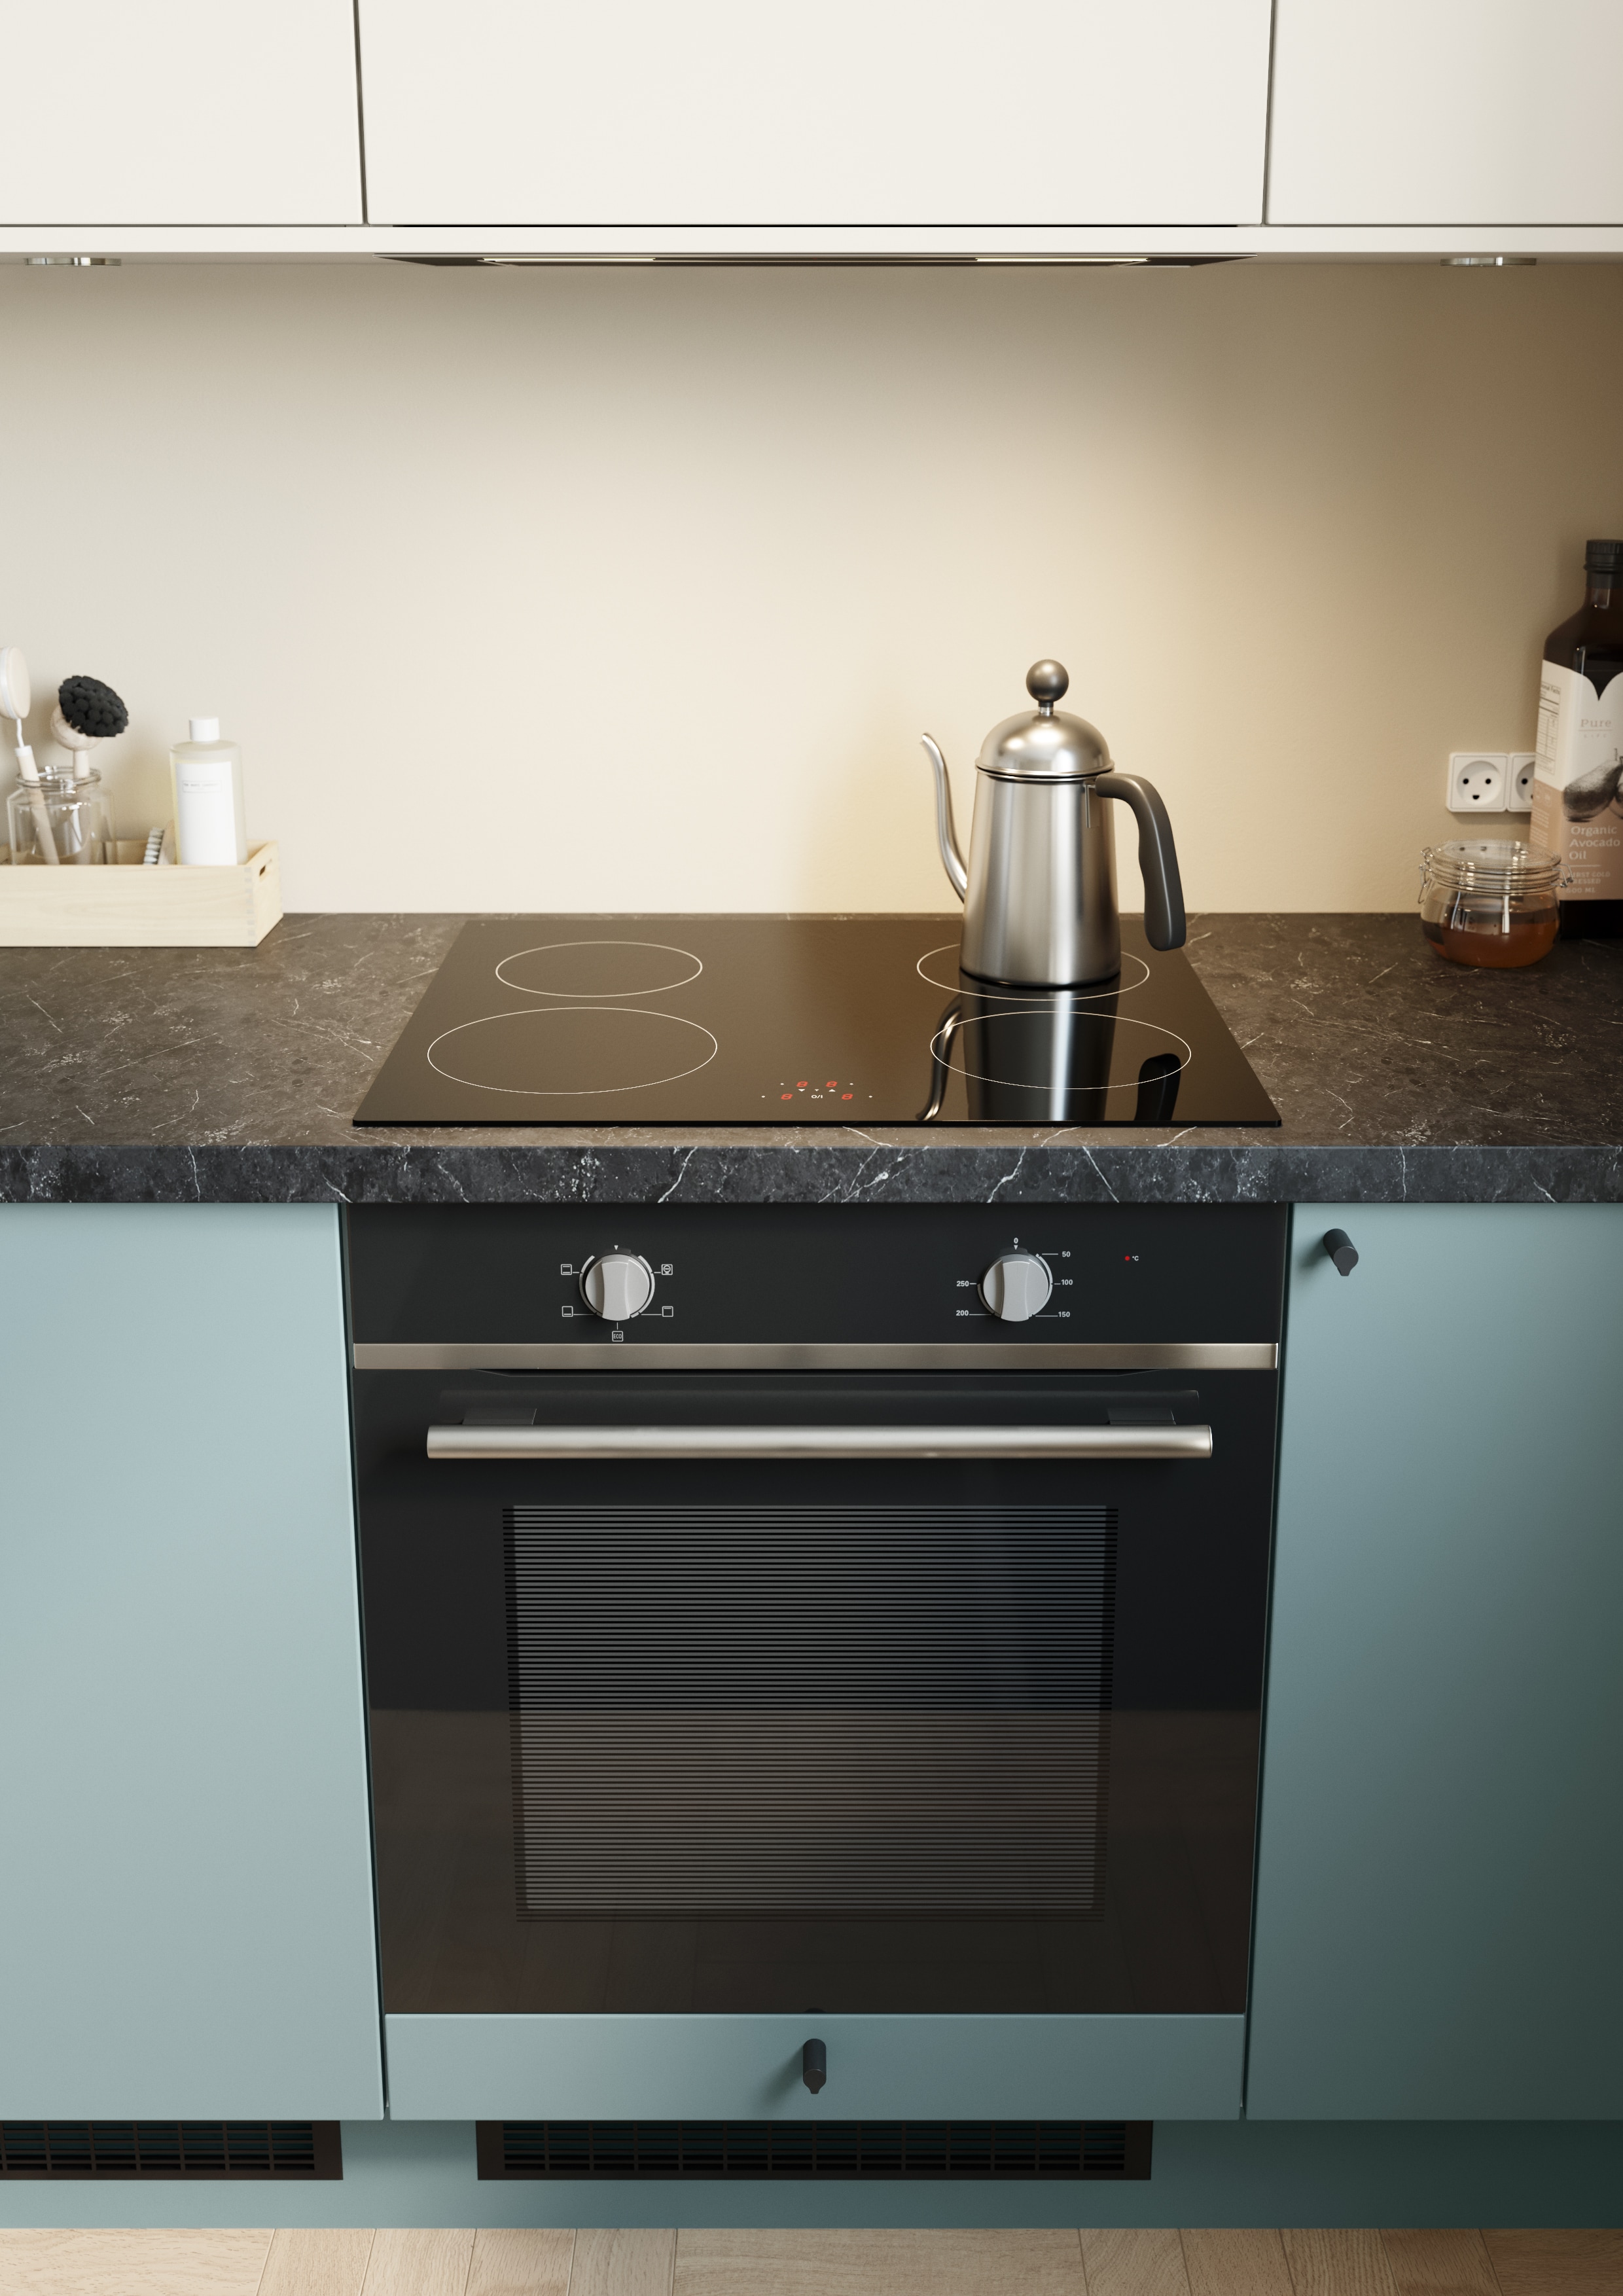 Epoq Trend Petrol og Warm White åpent kjøkken med integrert stekeovn og platetopp med kaffekanne